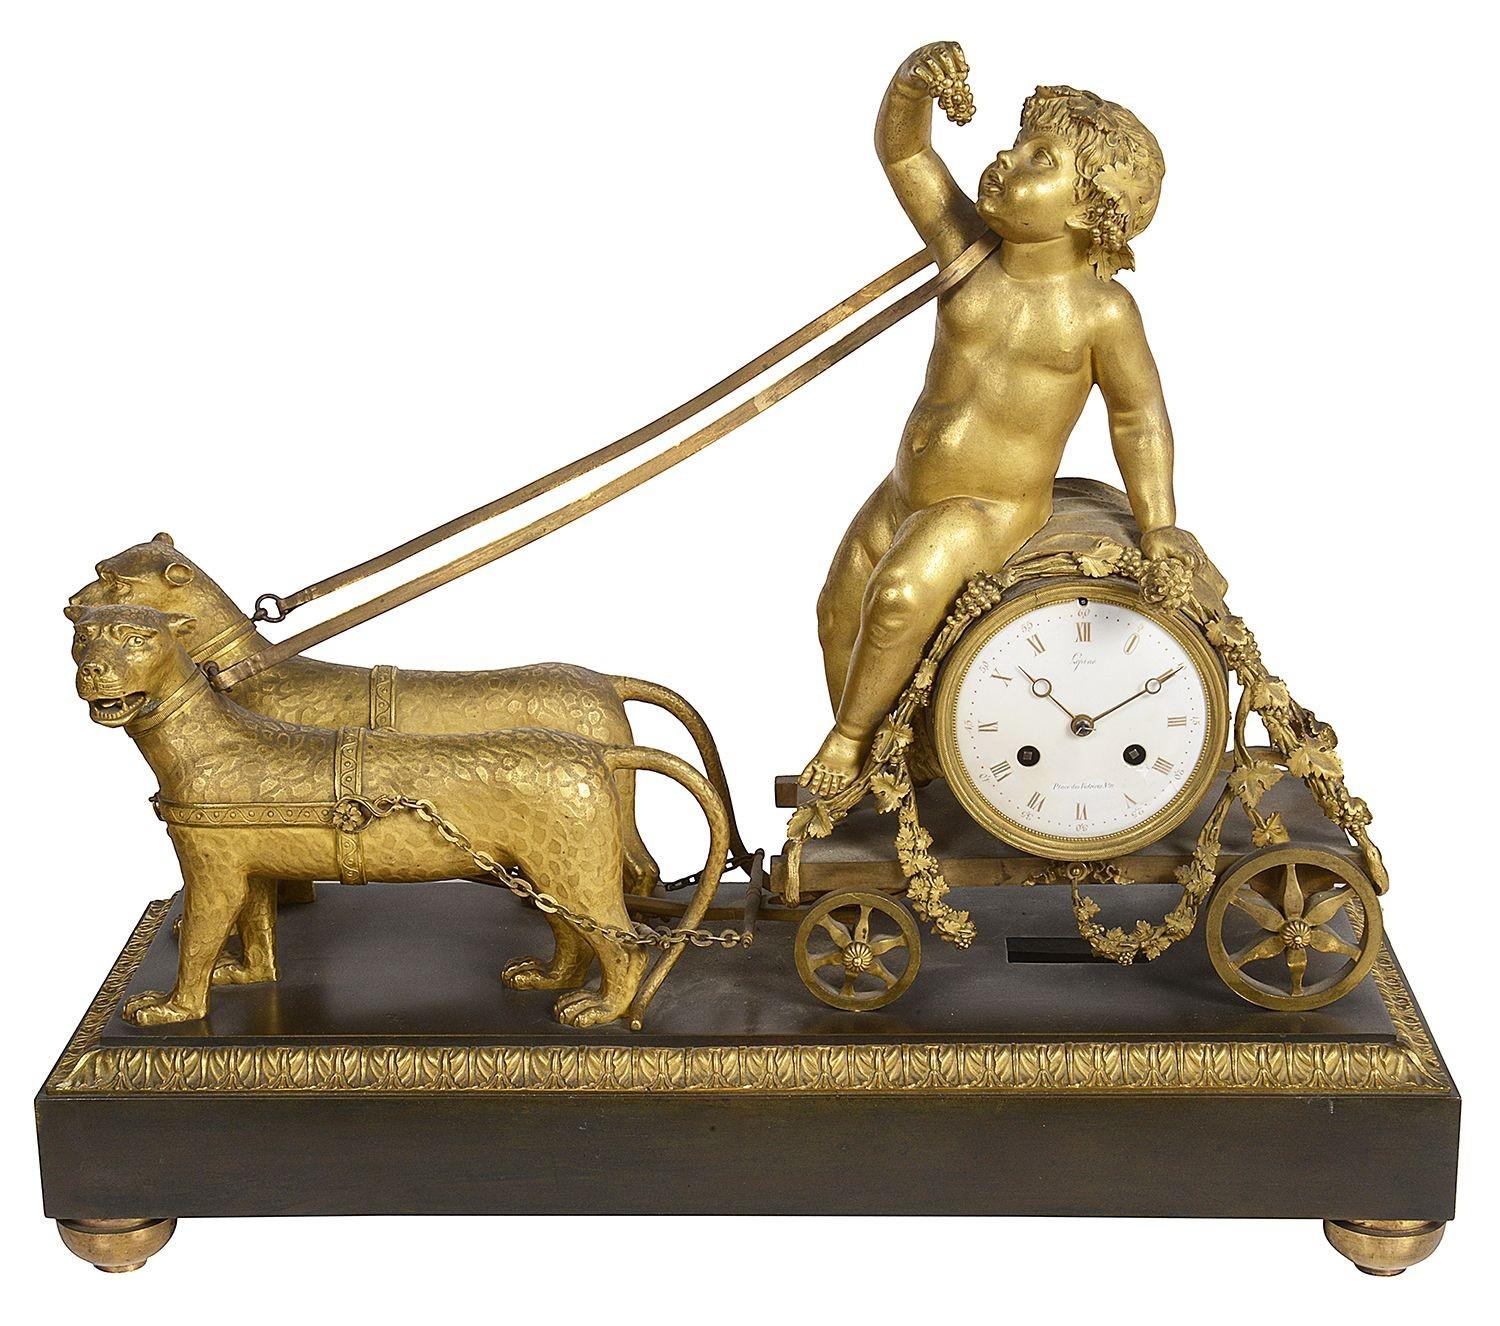 Une horloge de cheminée merveilleusement impressionnante et enchanteresse de la période de l'Empire français par Jean-Antoine Lépine (1720-1814), horloger du roi Louis XV et de Louis XVI. 
Représentation d'une paire de léopards tirant un putti